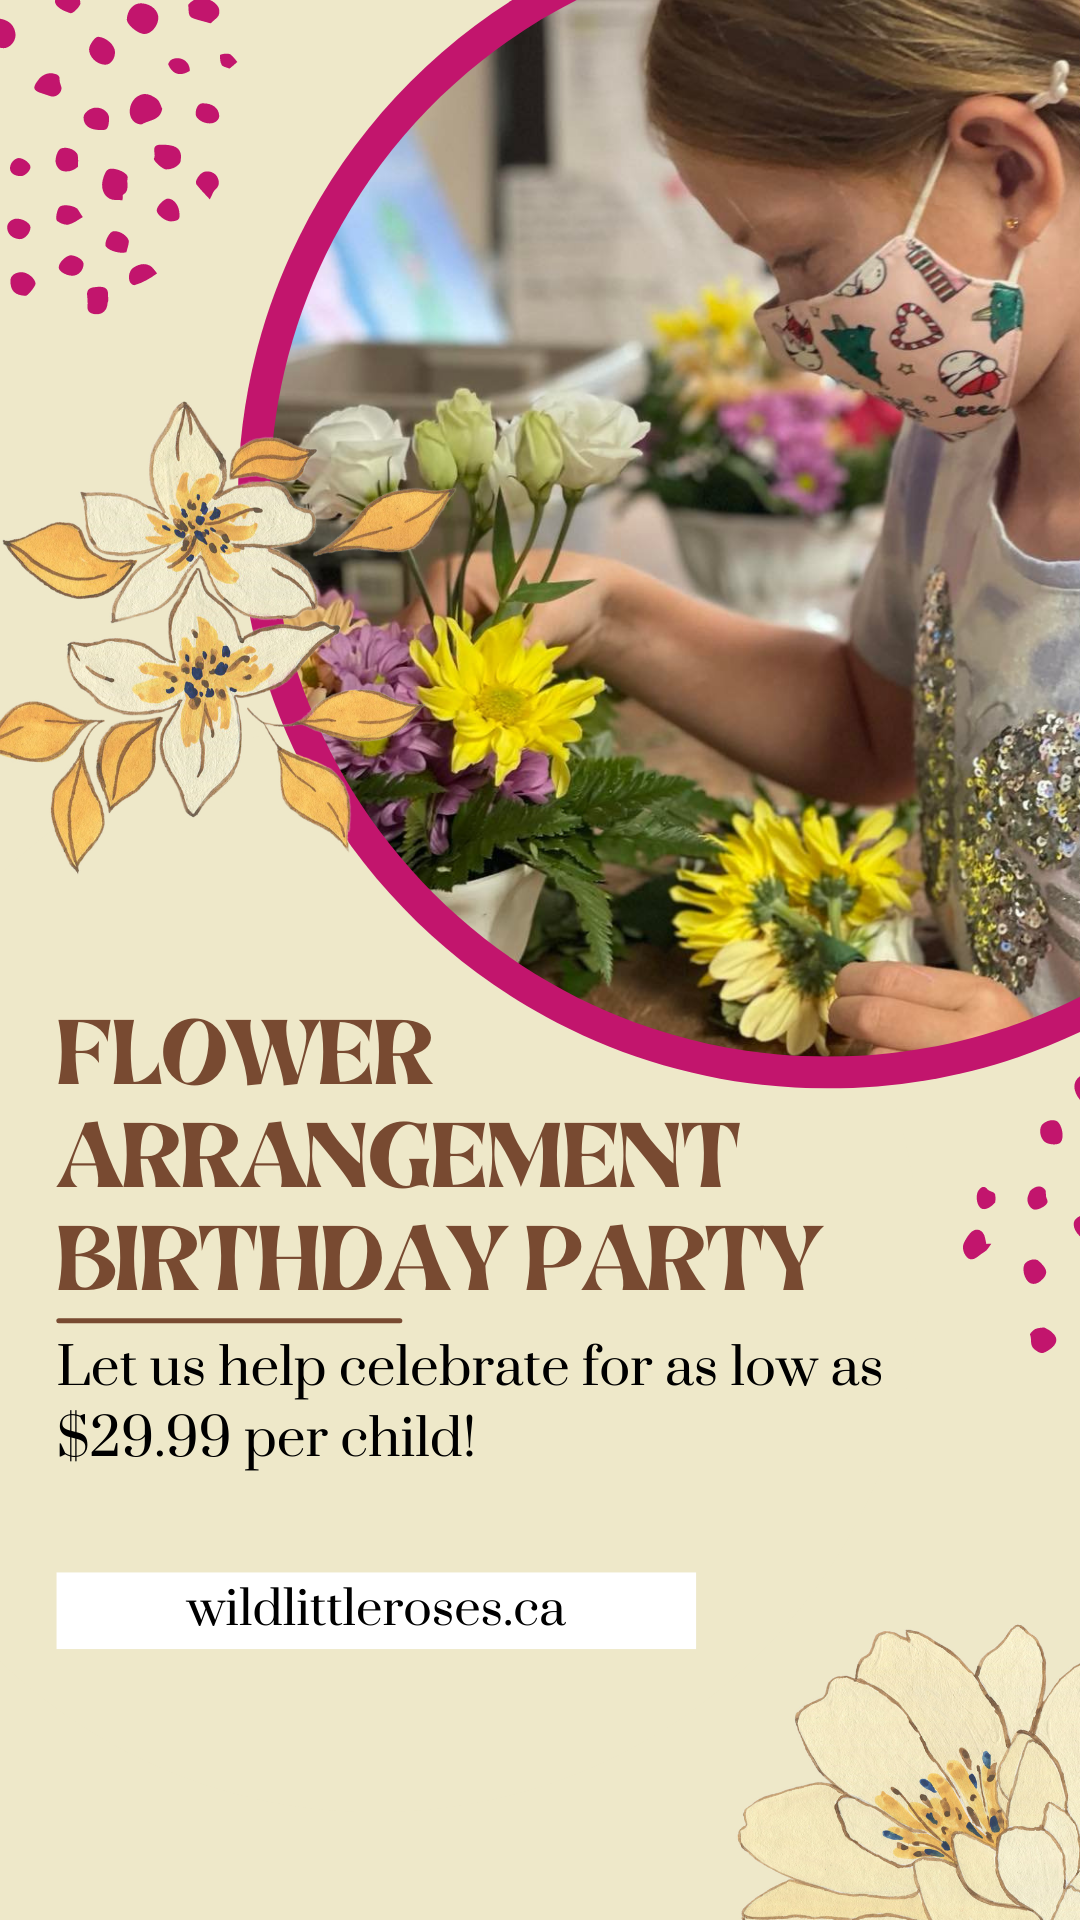 Children’s Birthday Party Floral Design